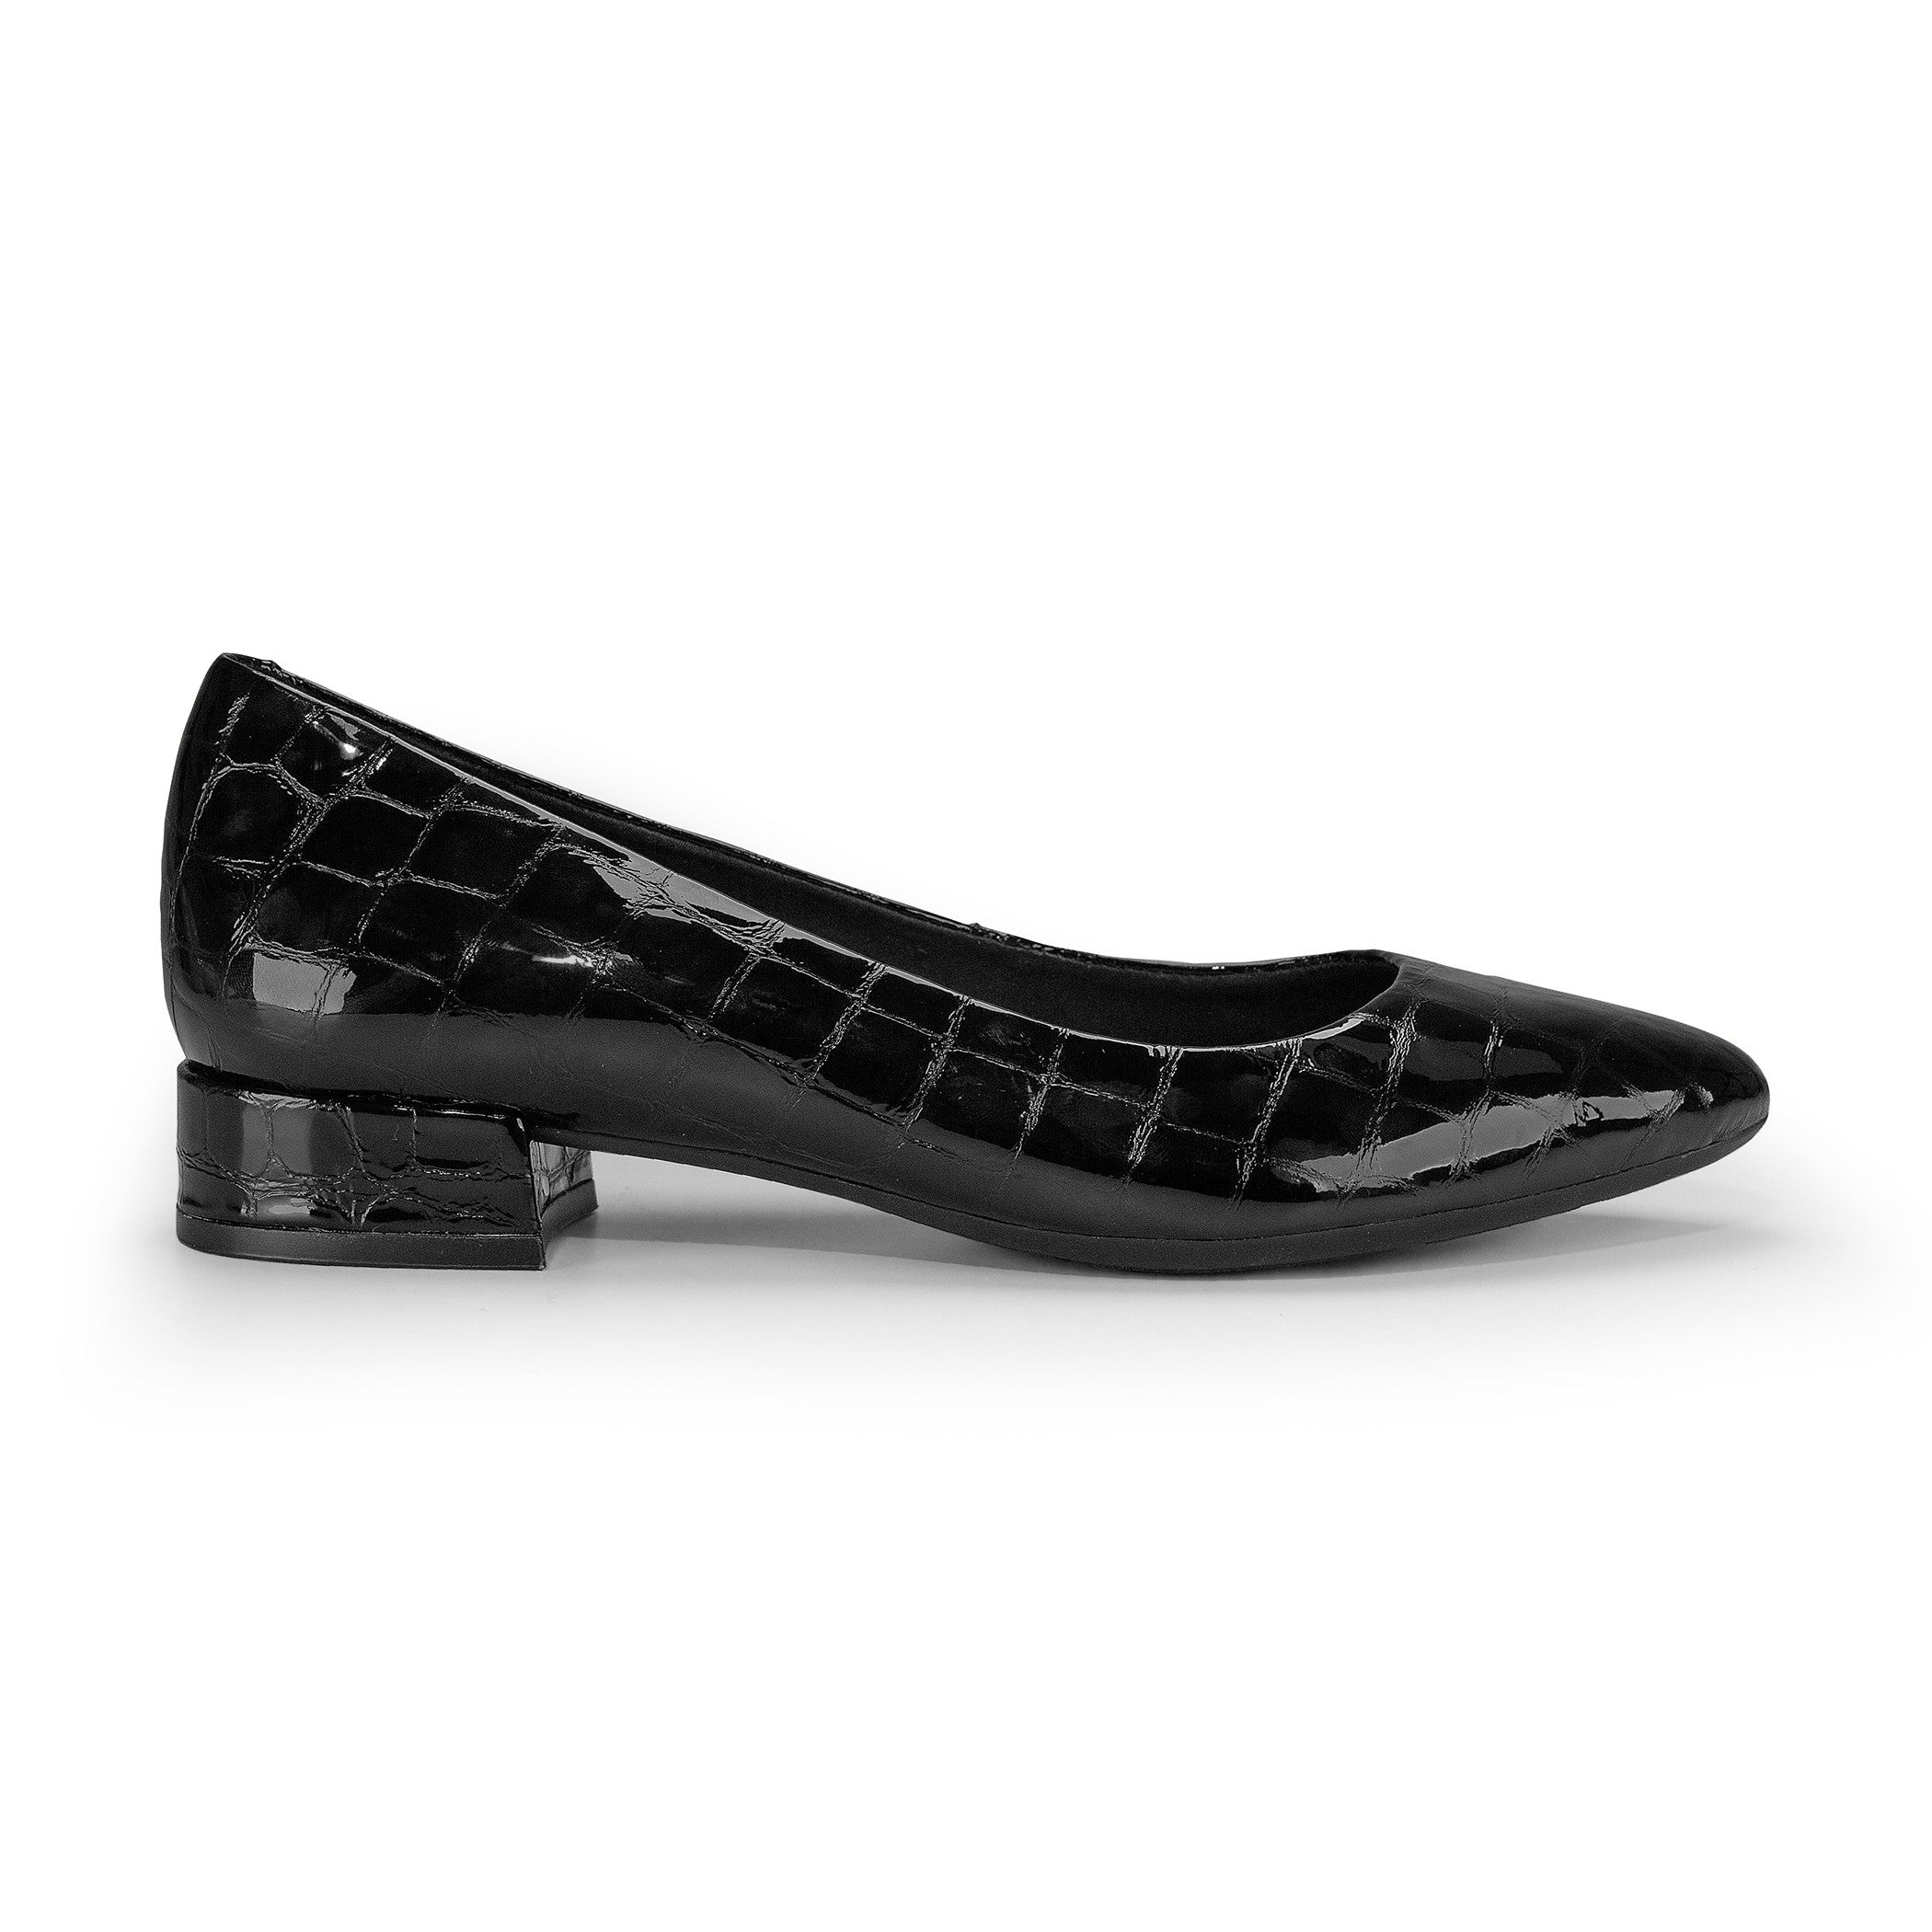 Low heel shoes dark brown leather ✓ Comfortable HEEL PUMPS